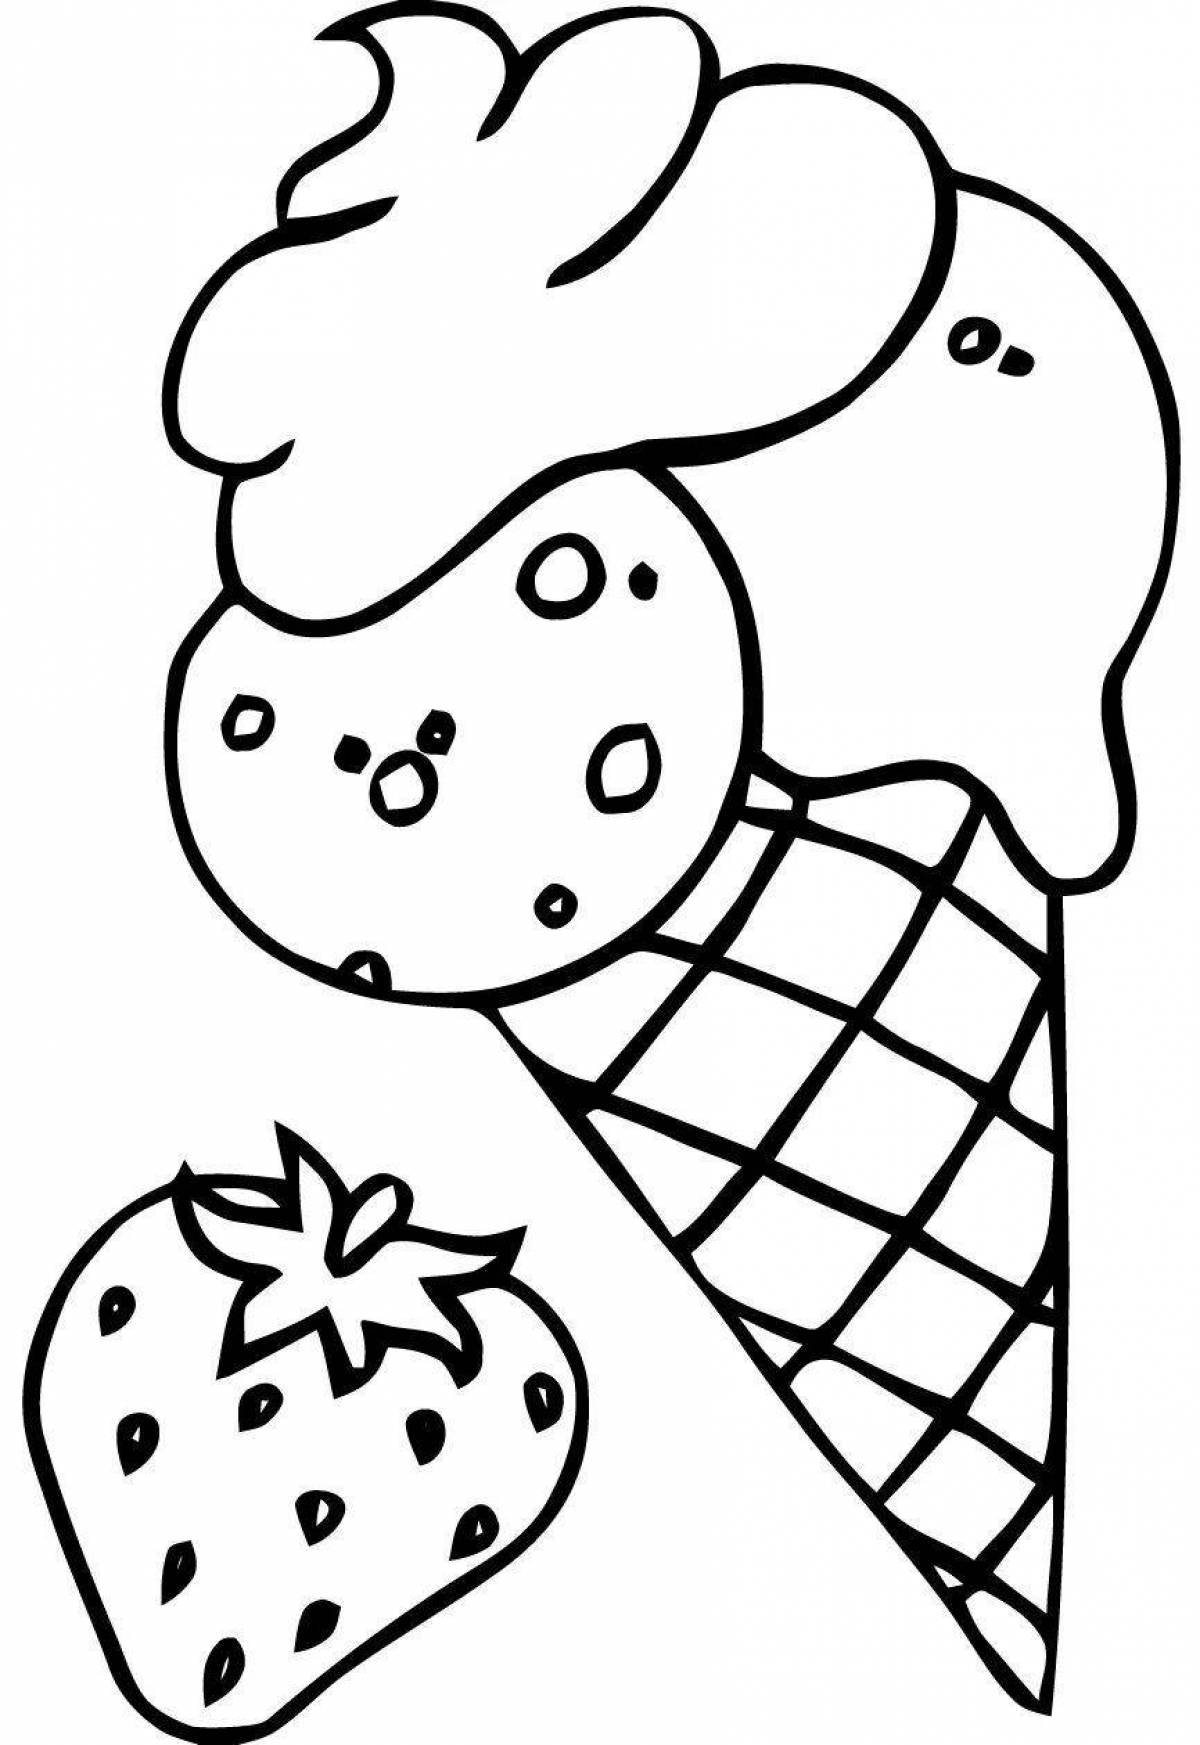 Раскраска мороженки. Раскраска мороженое. Мороженое раскраска для детей. Мороженое для раскрашивания детям. Раскраска для девочек мороженое.